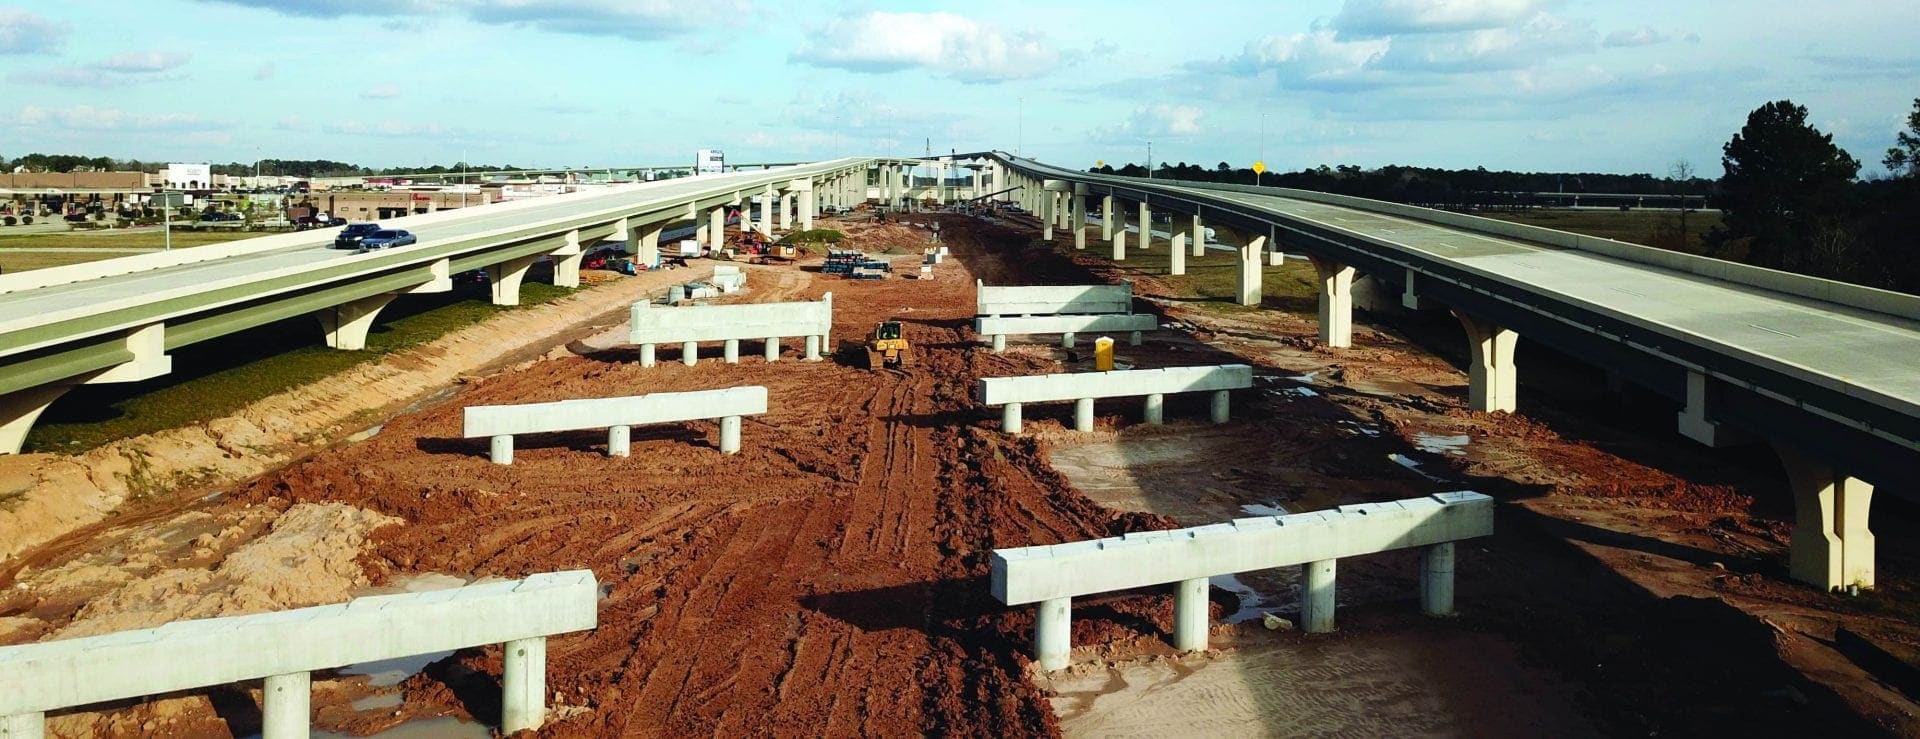 Un consorcio formado por Ferrovial Agroman US, Webber y Granite Construction, construye la autopista SH 99 Grand Parkway